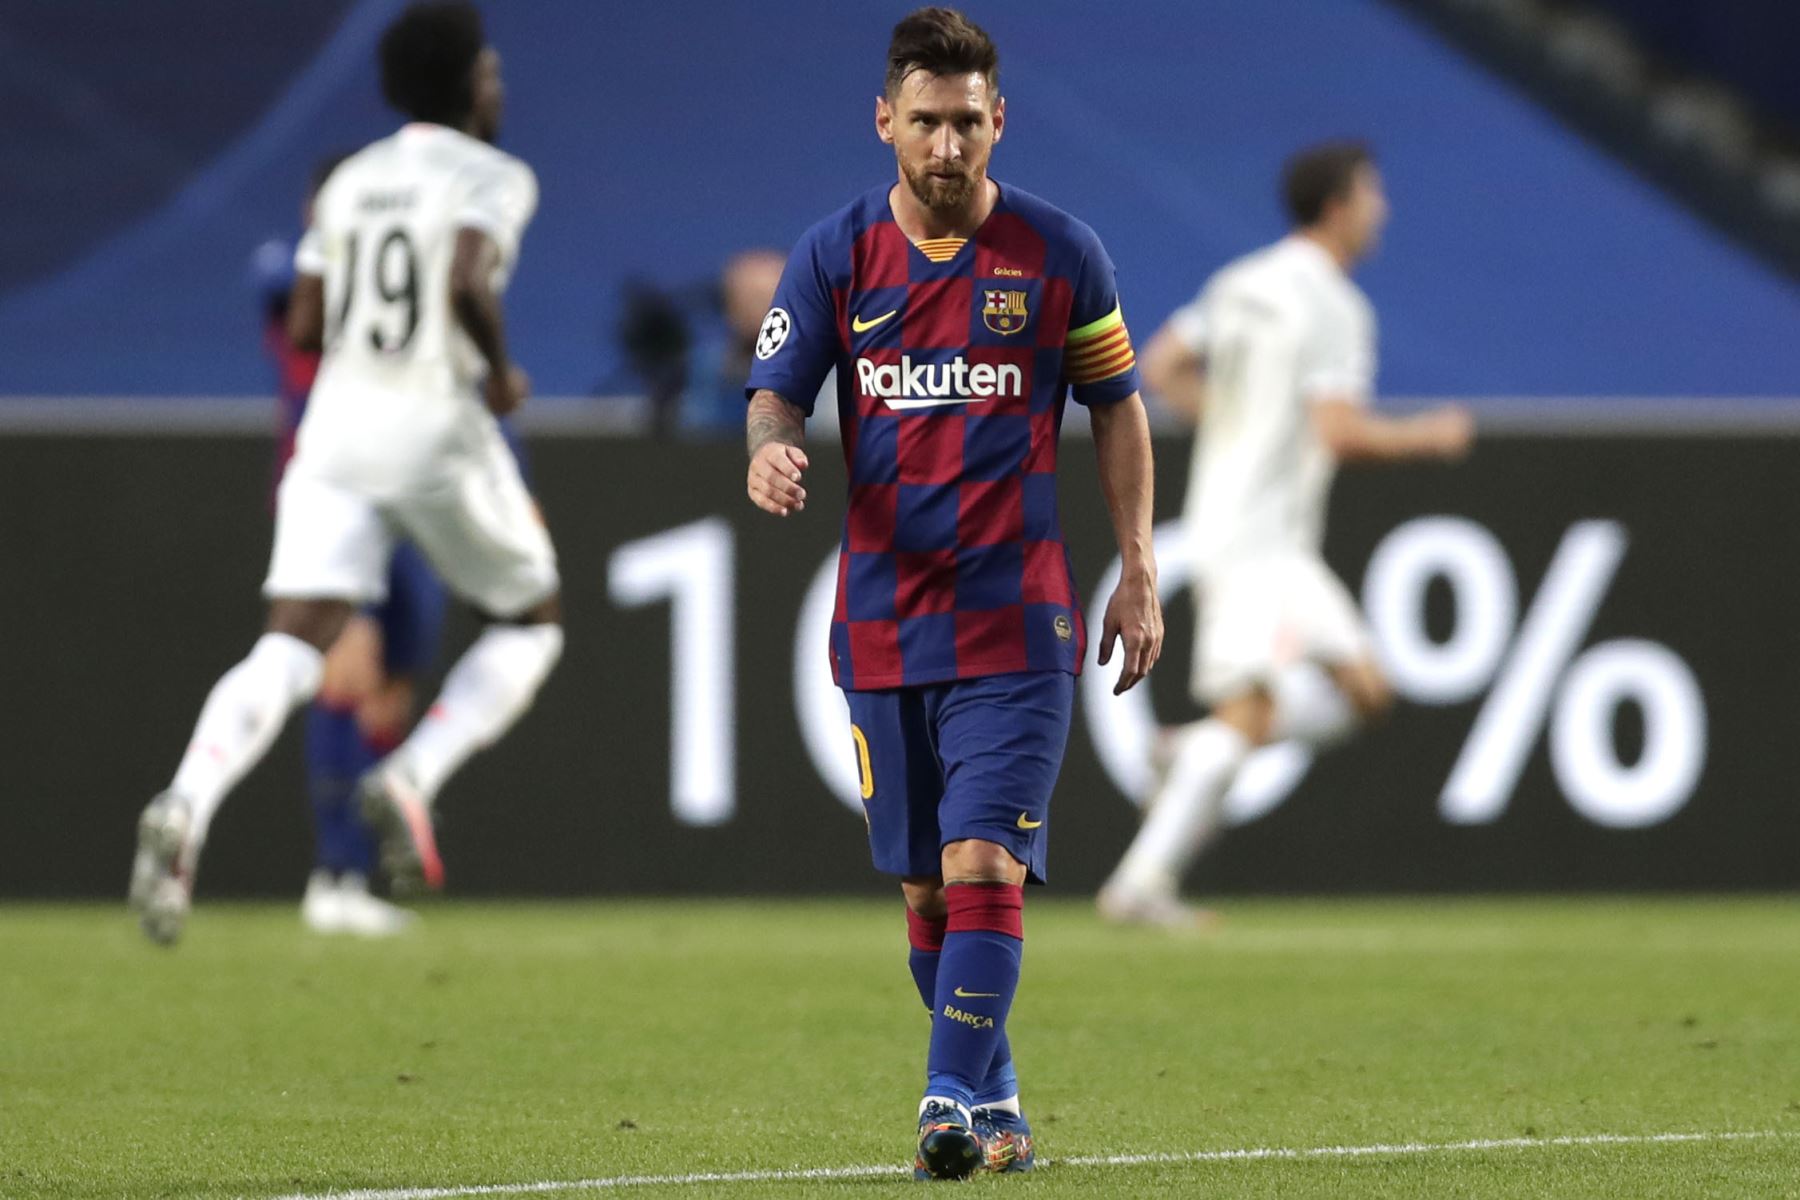 El delantero argentino del Barcelona Lionel Messi reacciona después del tercer gol del Bayern de Múnich durante el partido de fútbol de cuartos de final de la Liga de Campeones de la UEFA entre el Barcelona y el Bayern de Múnich en el estadio Luz de Lisboa.
Foto:AFP